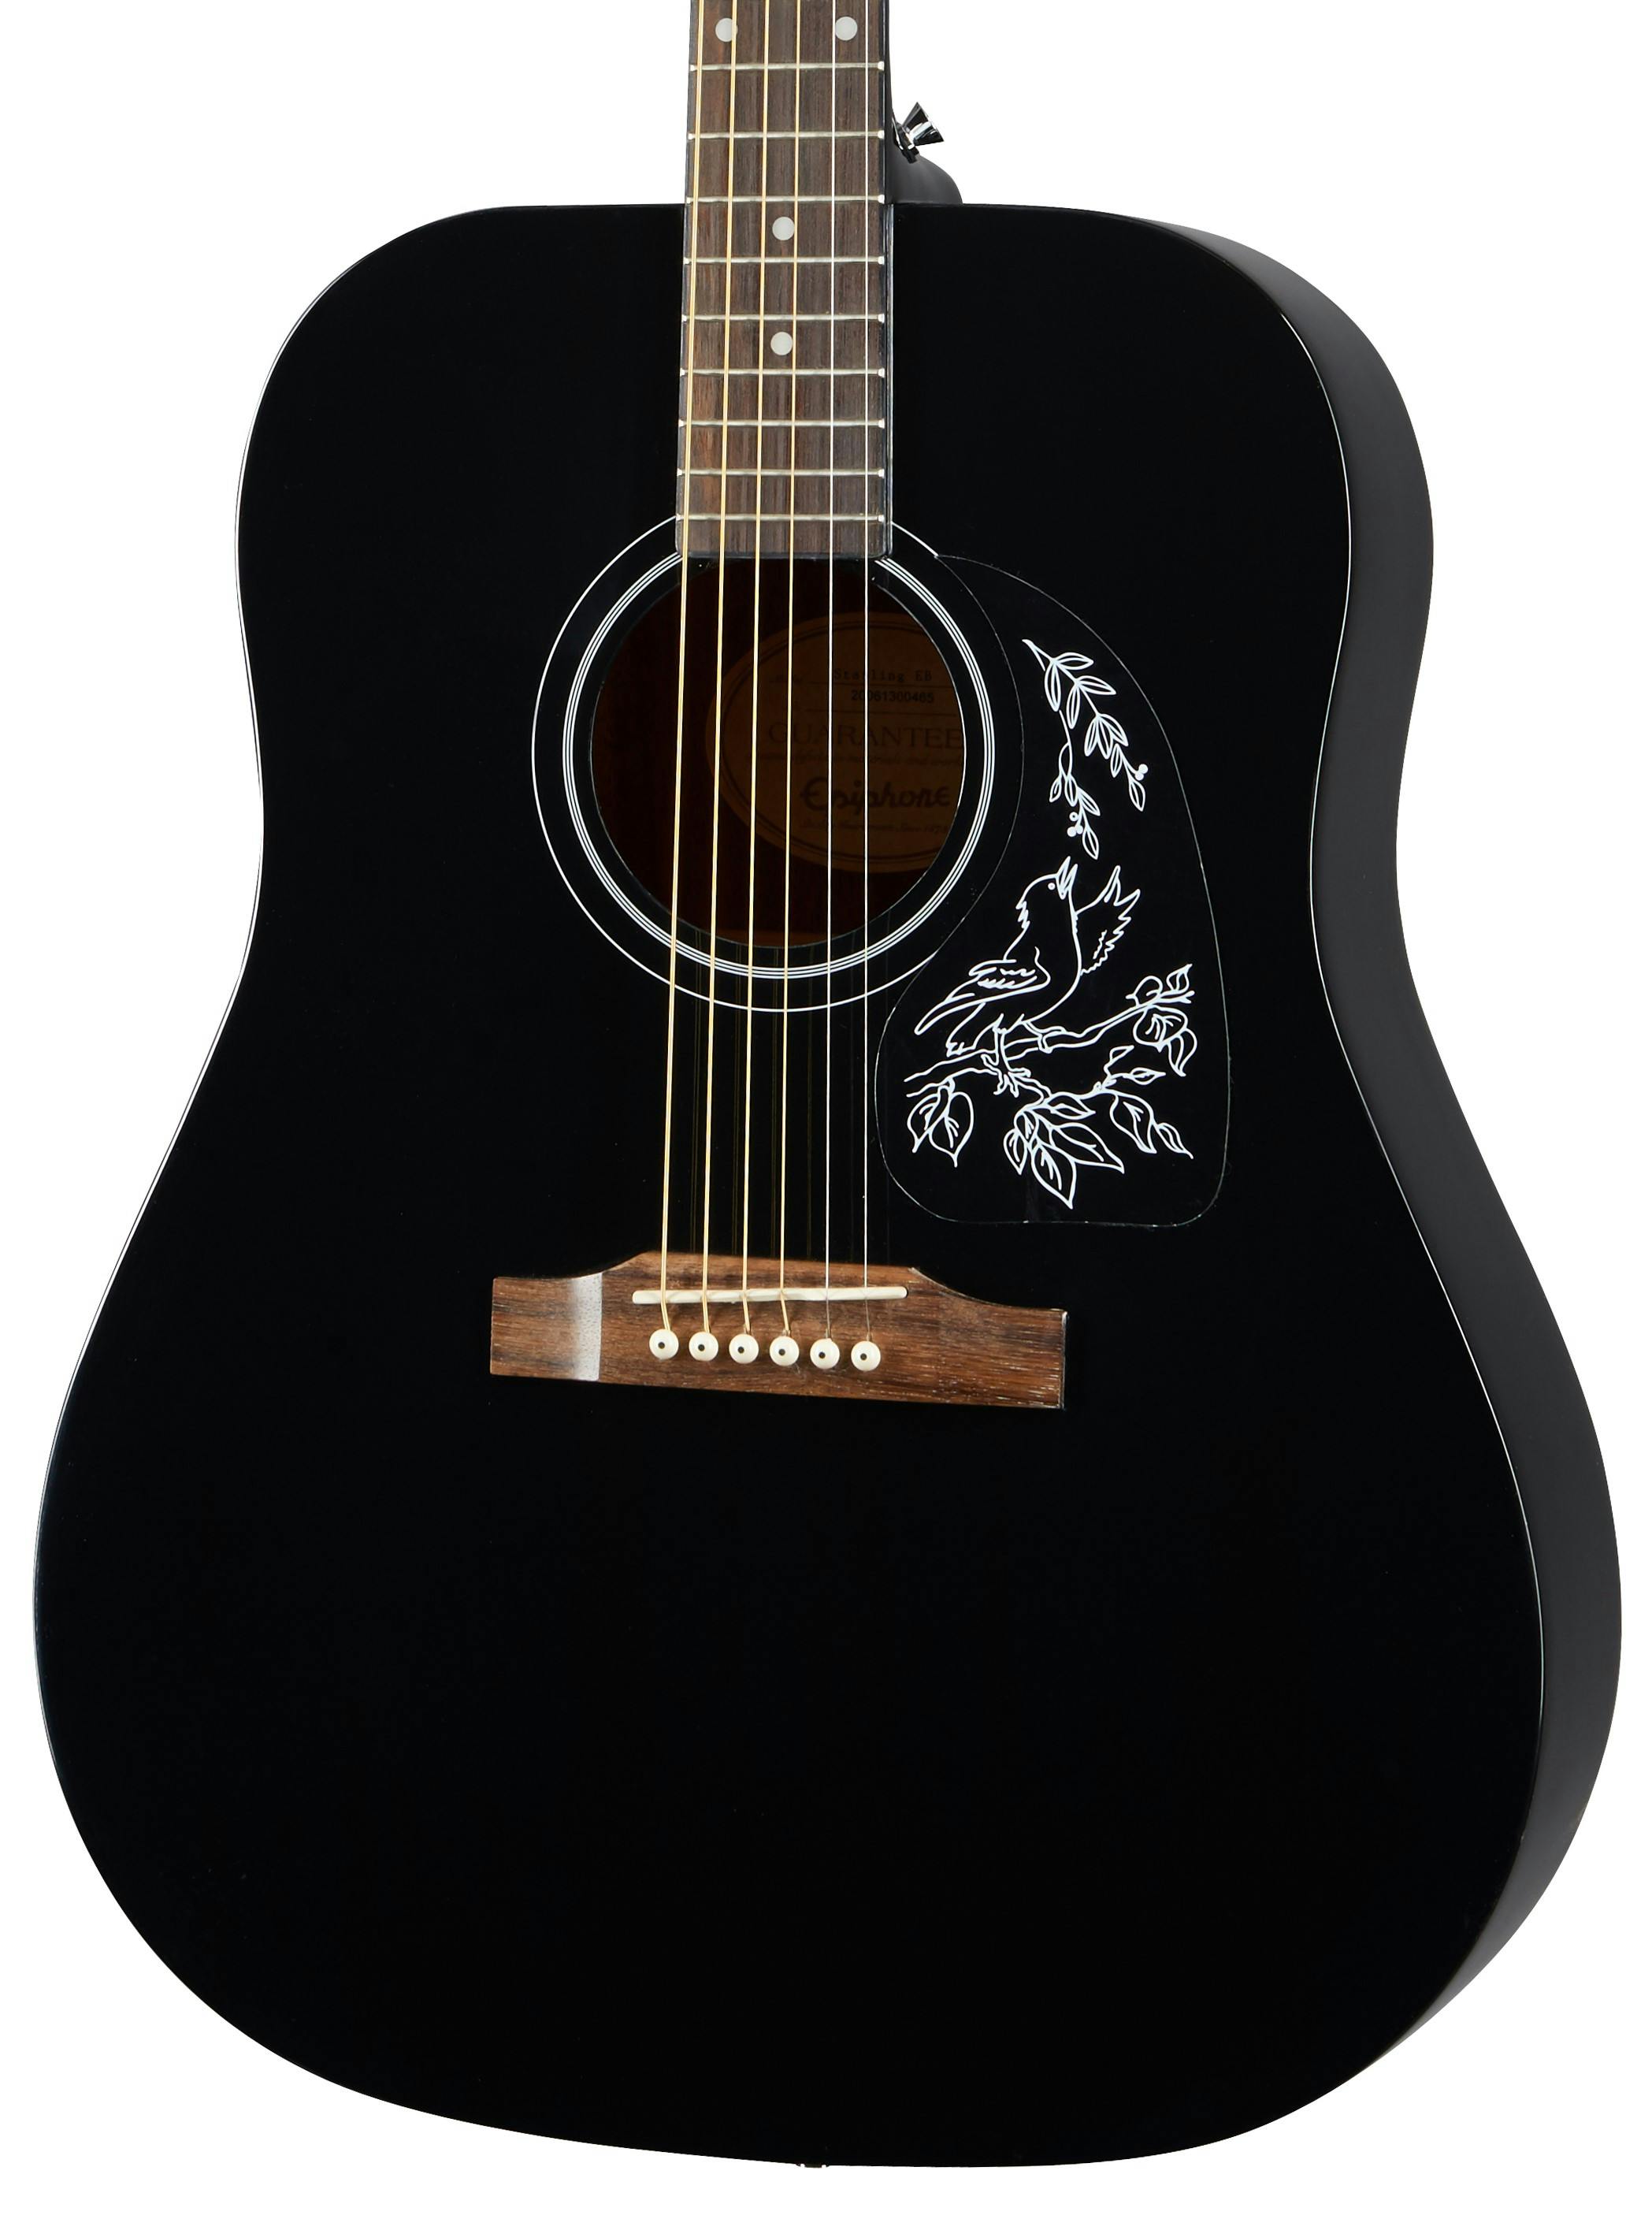 Epiphone ebony. Акустическая гитара Epiphone. Epiphone Starling ebony. Электроакустические гитары Gibson j-45. Акустические гитары Gibson j-45 Deluxe.